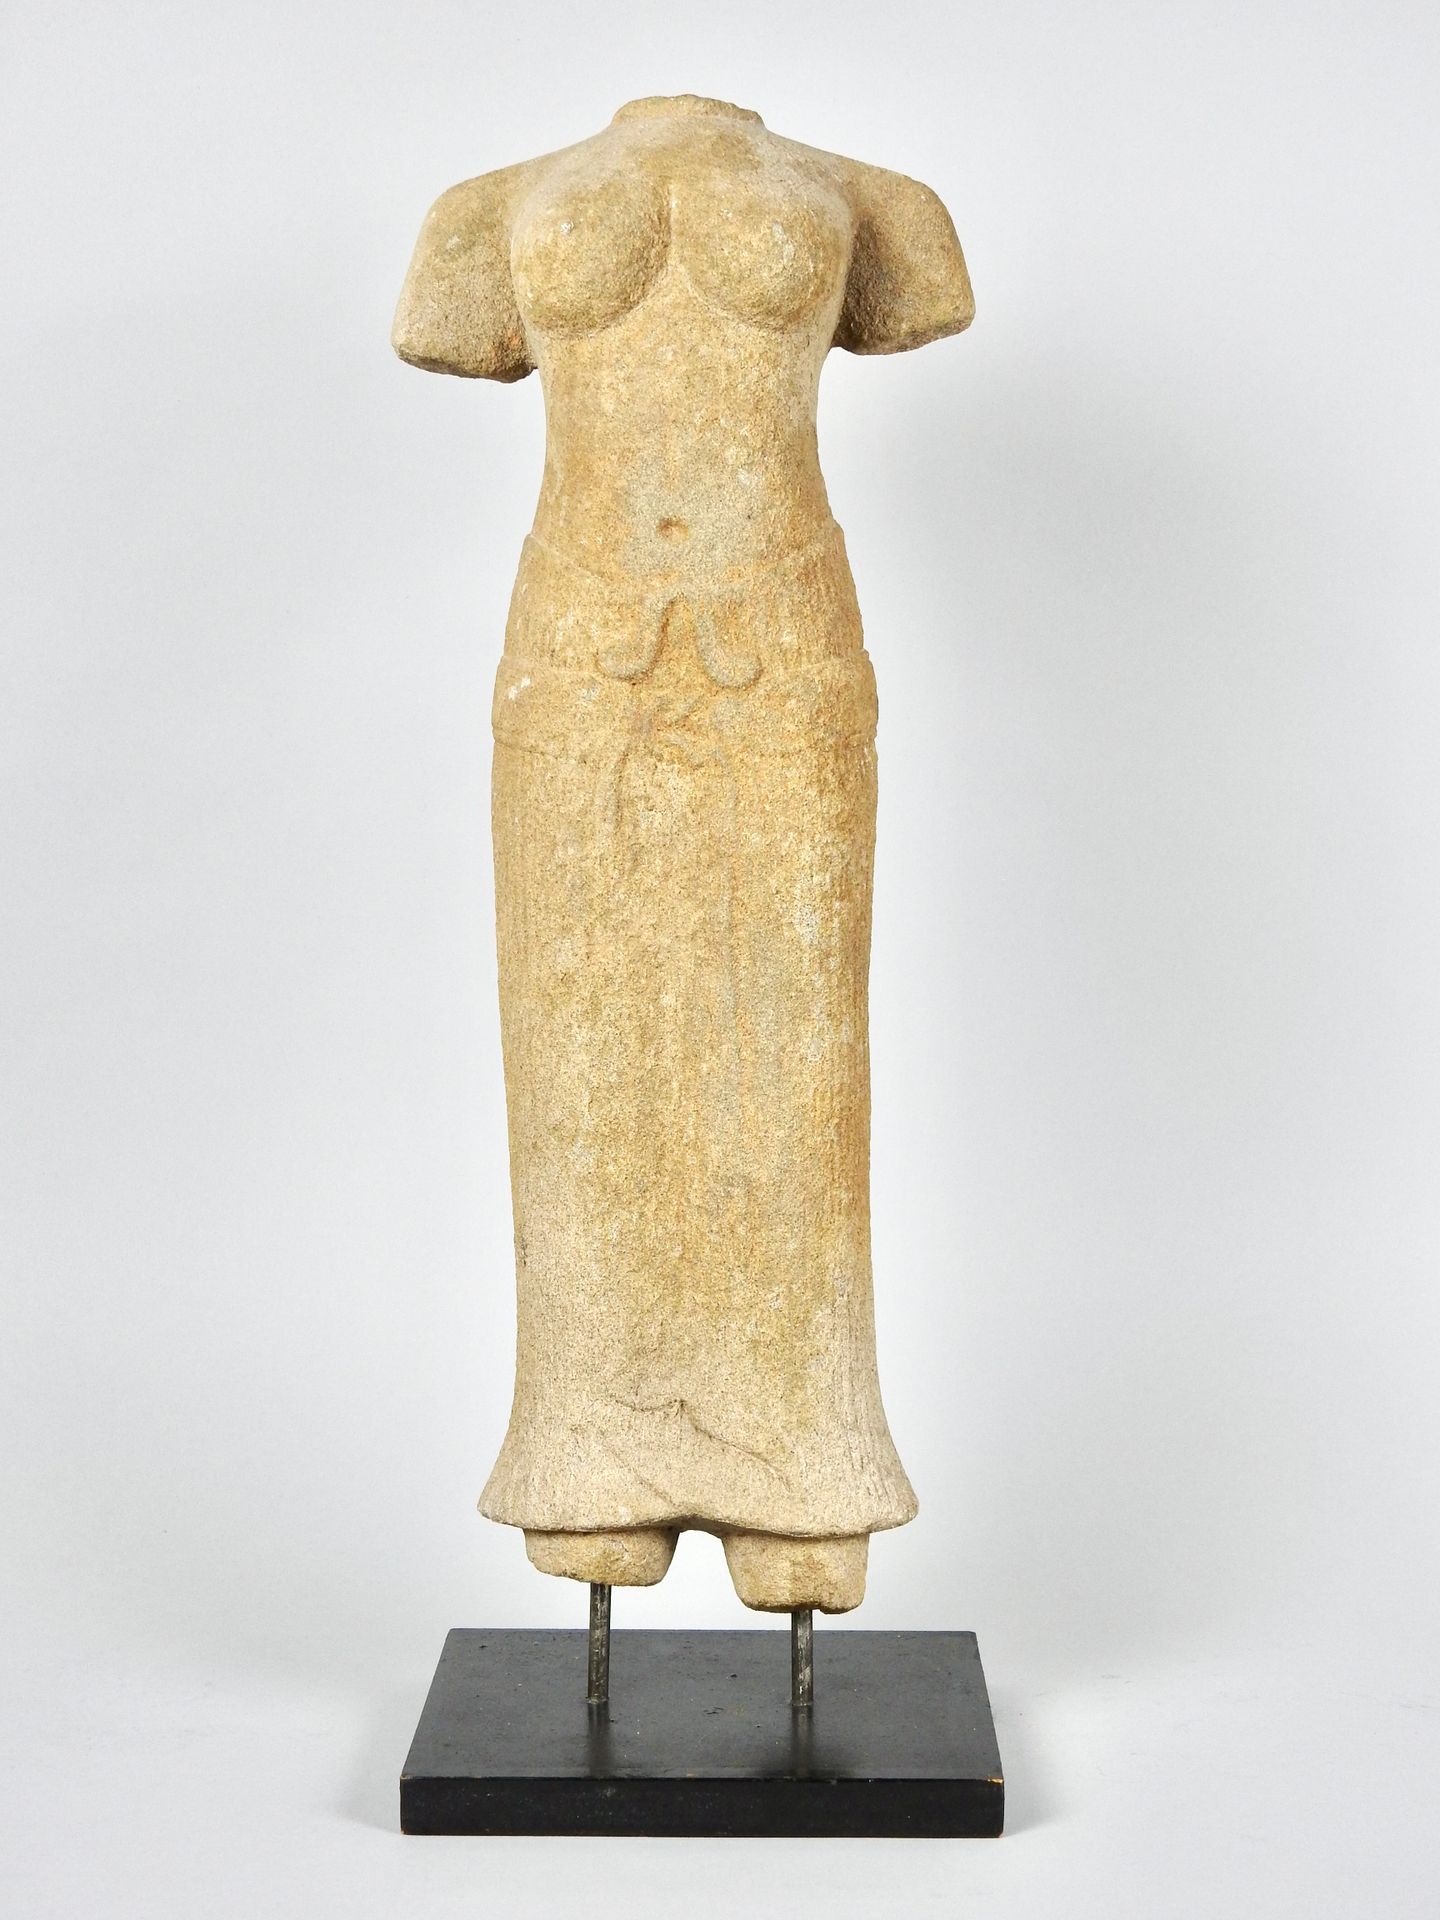 Null 中世纪巴戎传统中的高棉风格 女神的头盖骨身体

雕刻的砂岩

可能是代表乌玛女神。

高47厘米

原样，有明显的缺失部分。